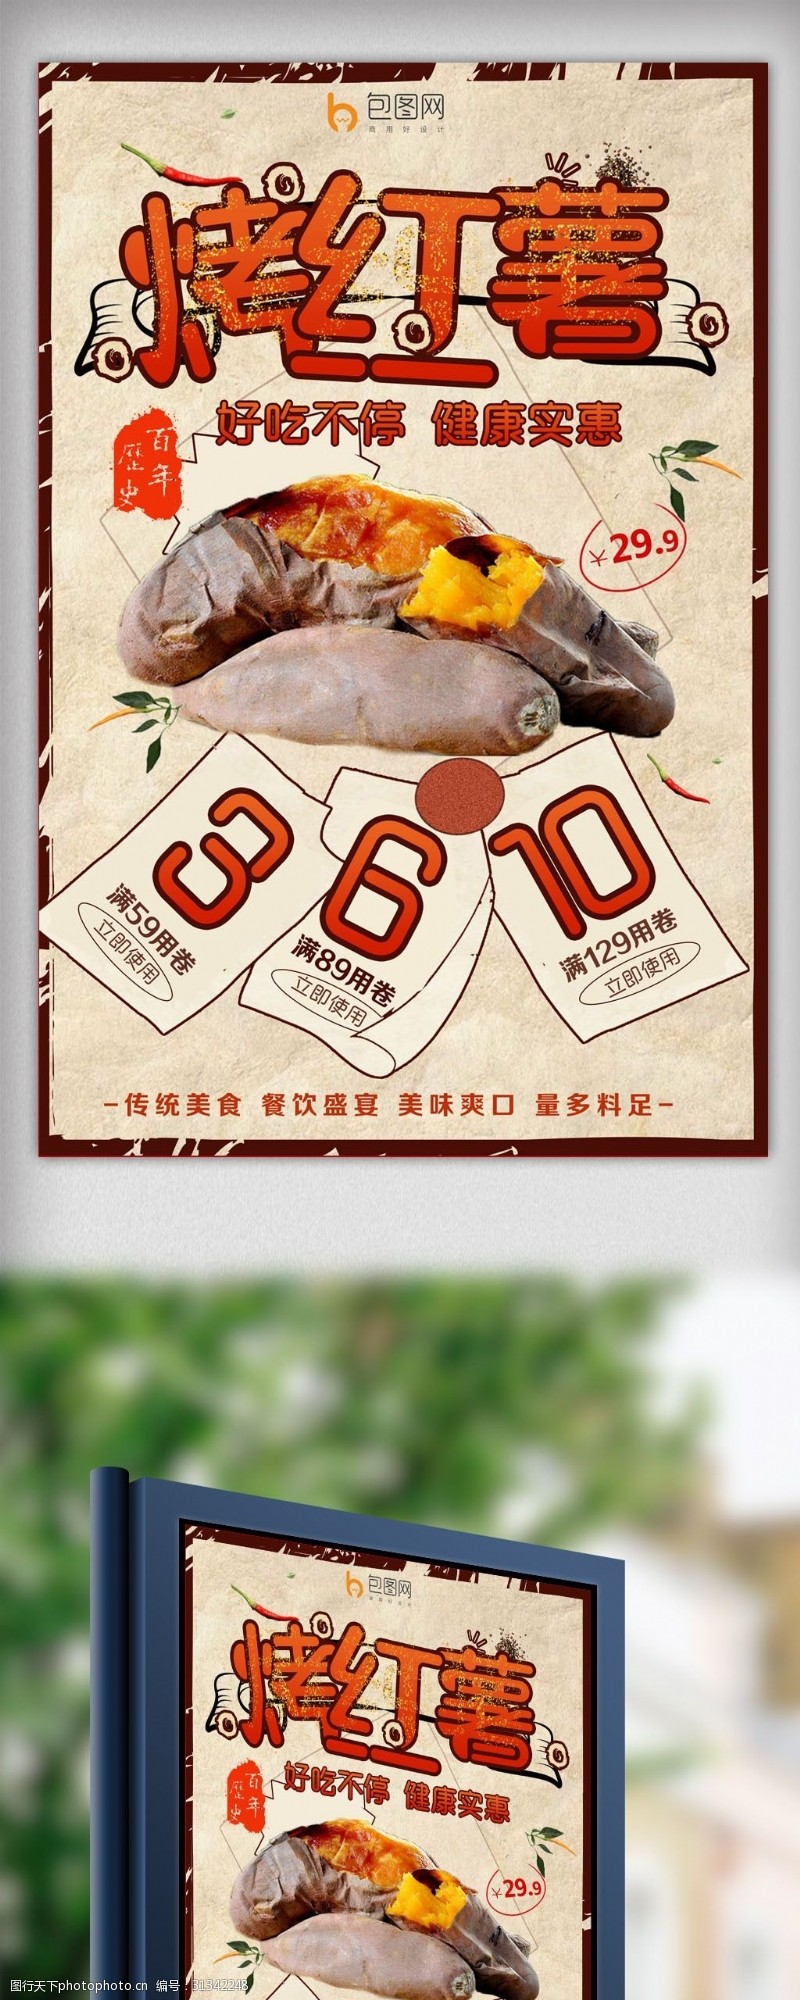 壁挂炉海报传统烤红薯海报设计